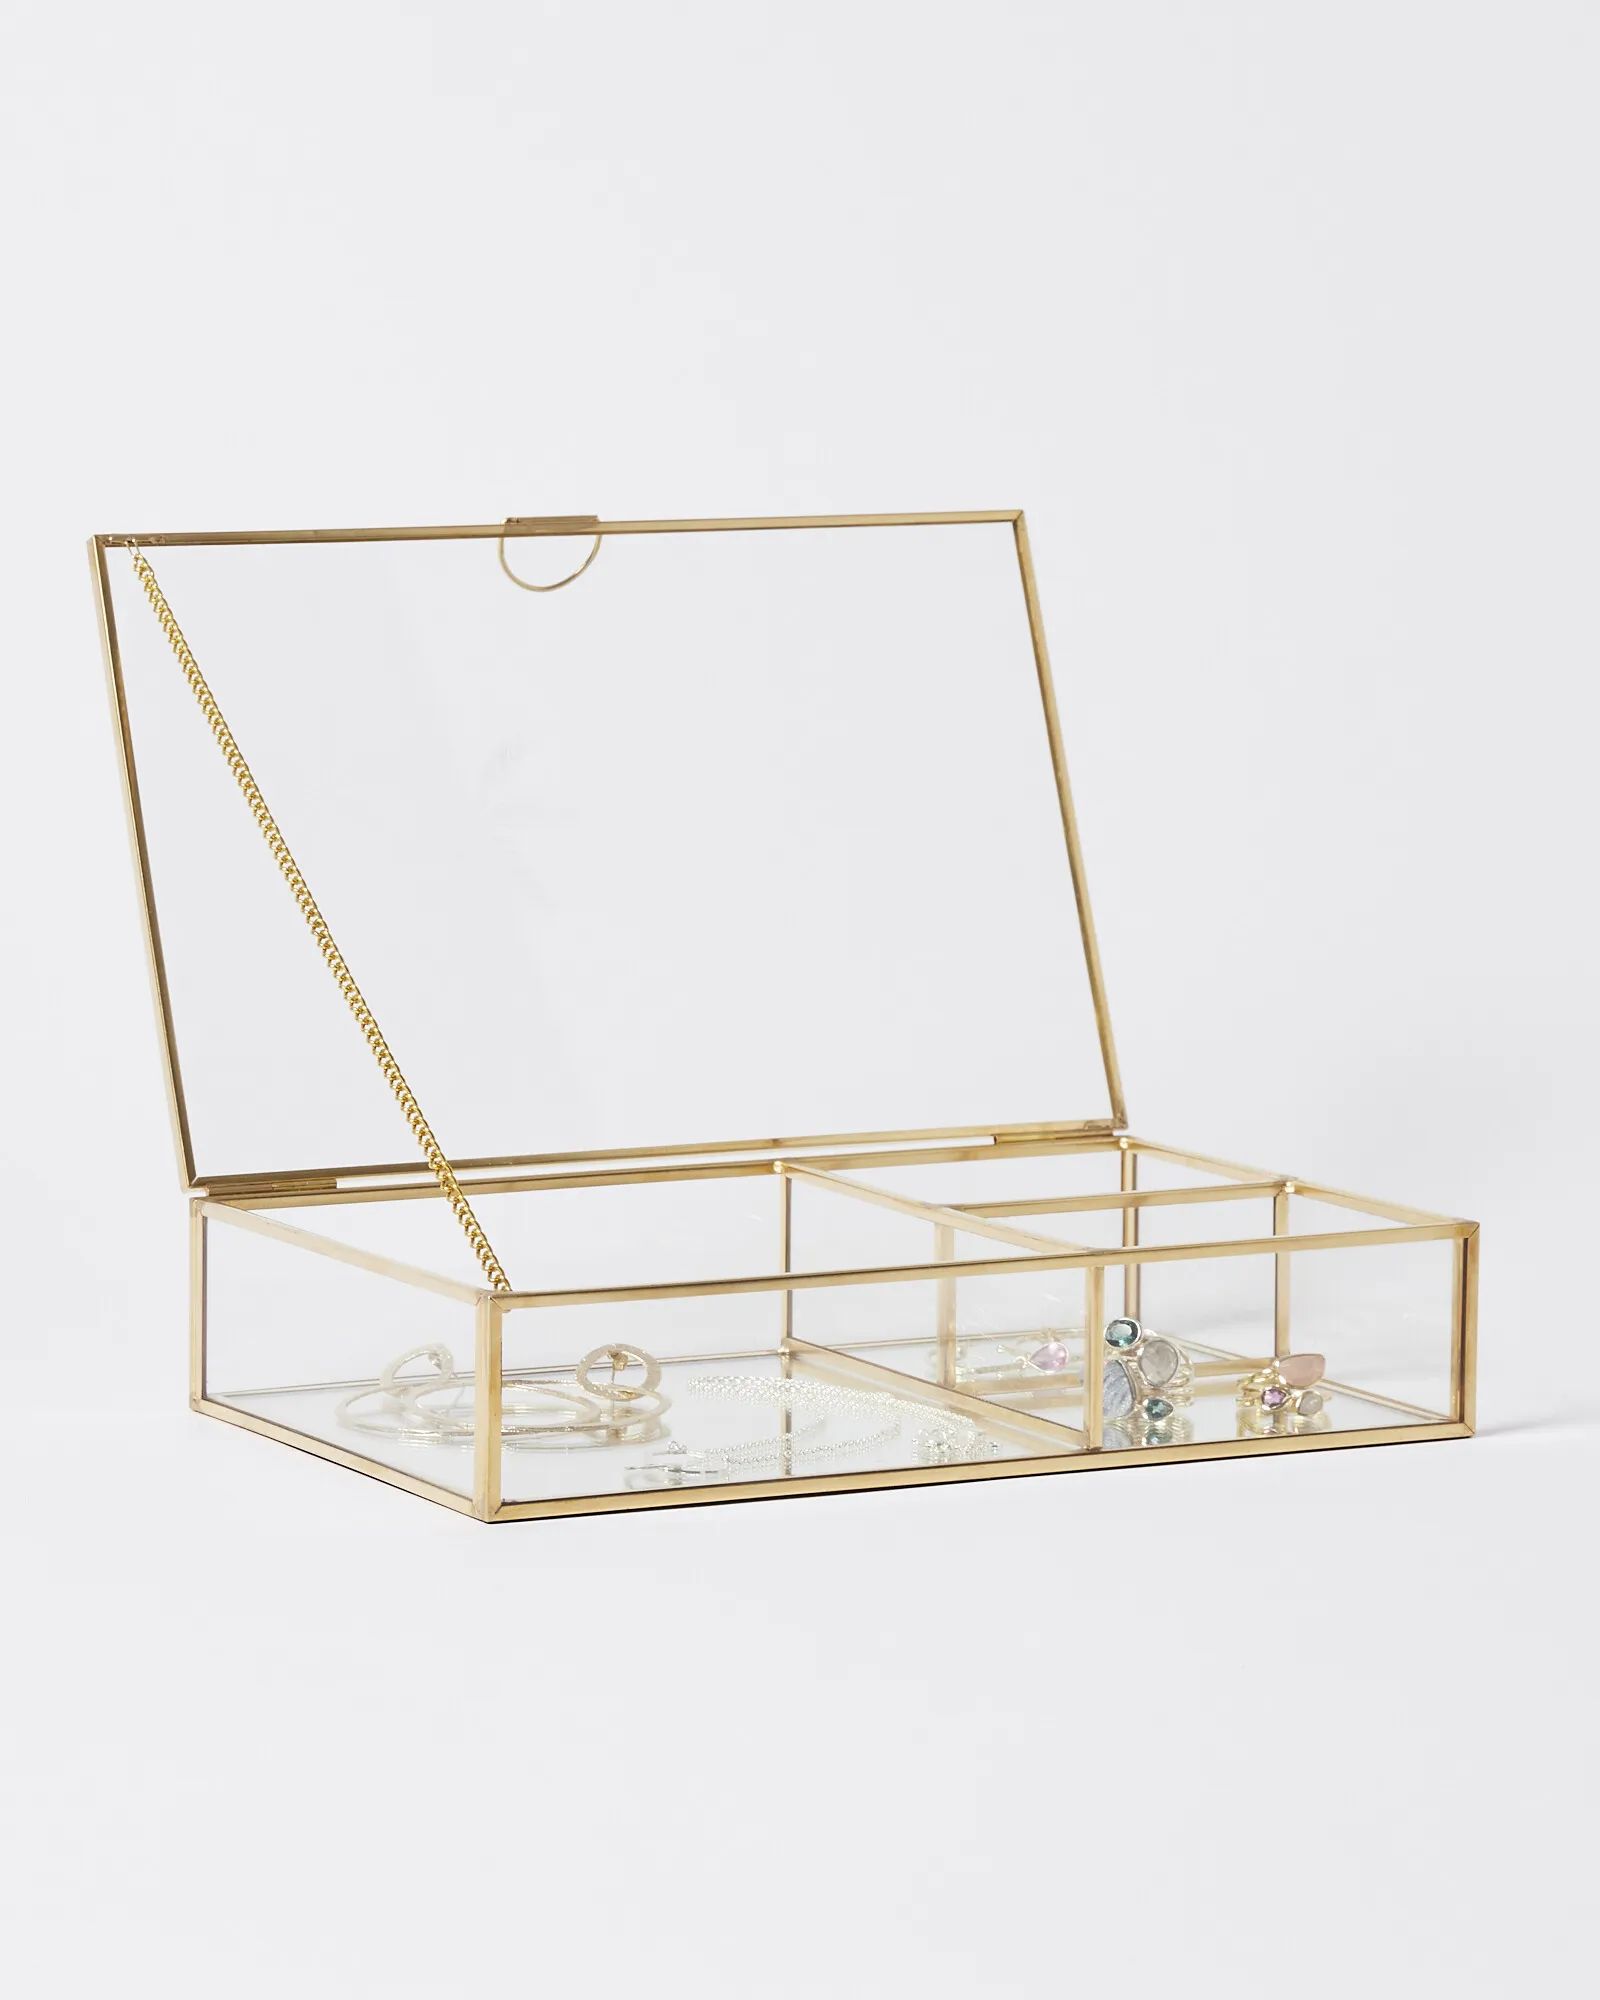 Paradise Gold & Glass Jewellery Box Medium | Oliver Bonas | Oliver Bonas (Global)